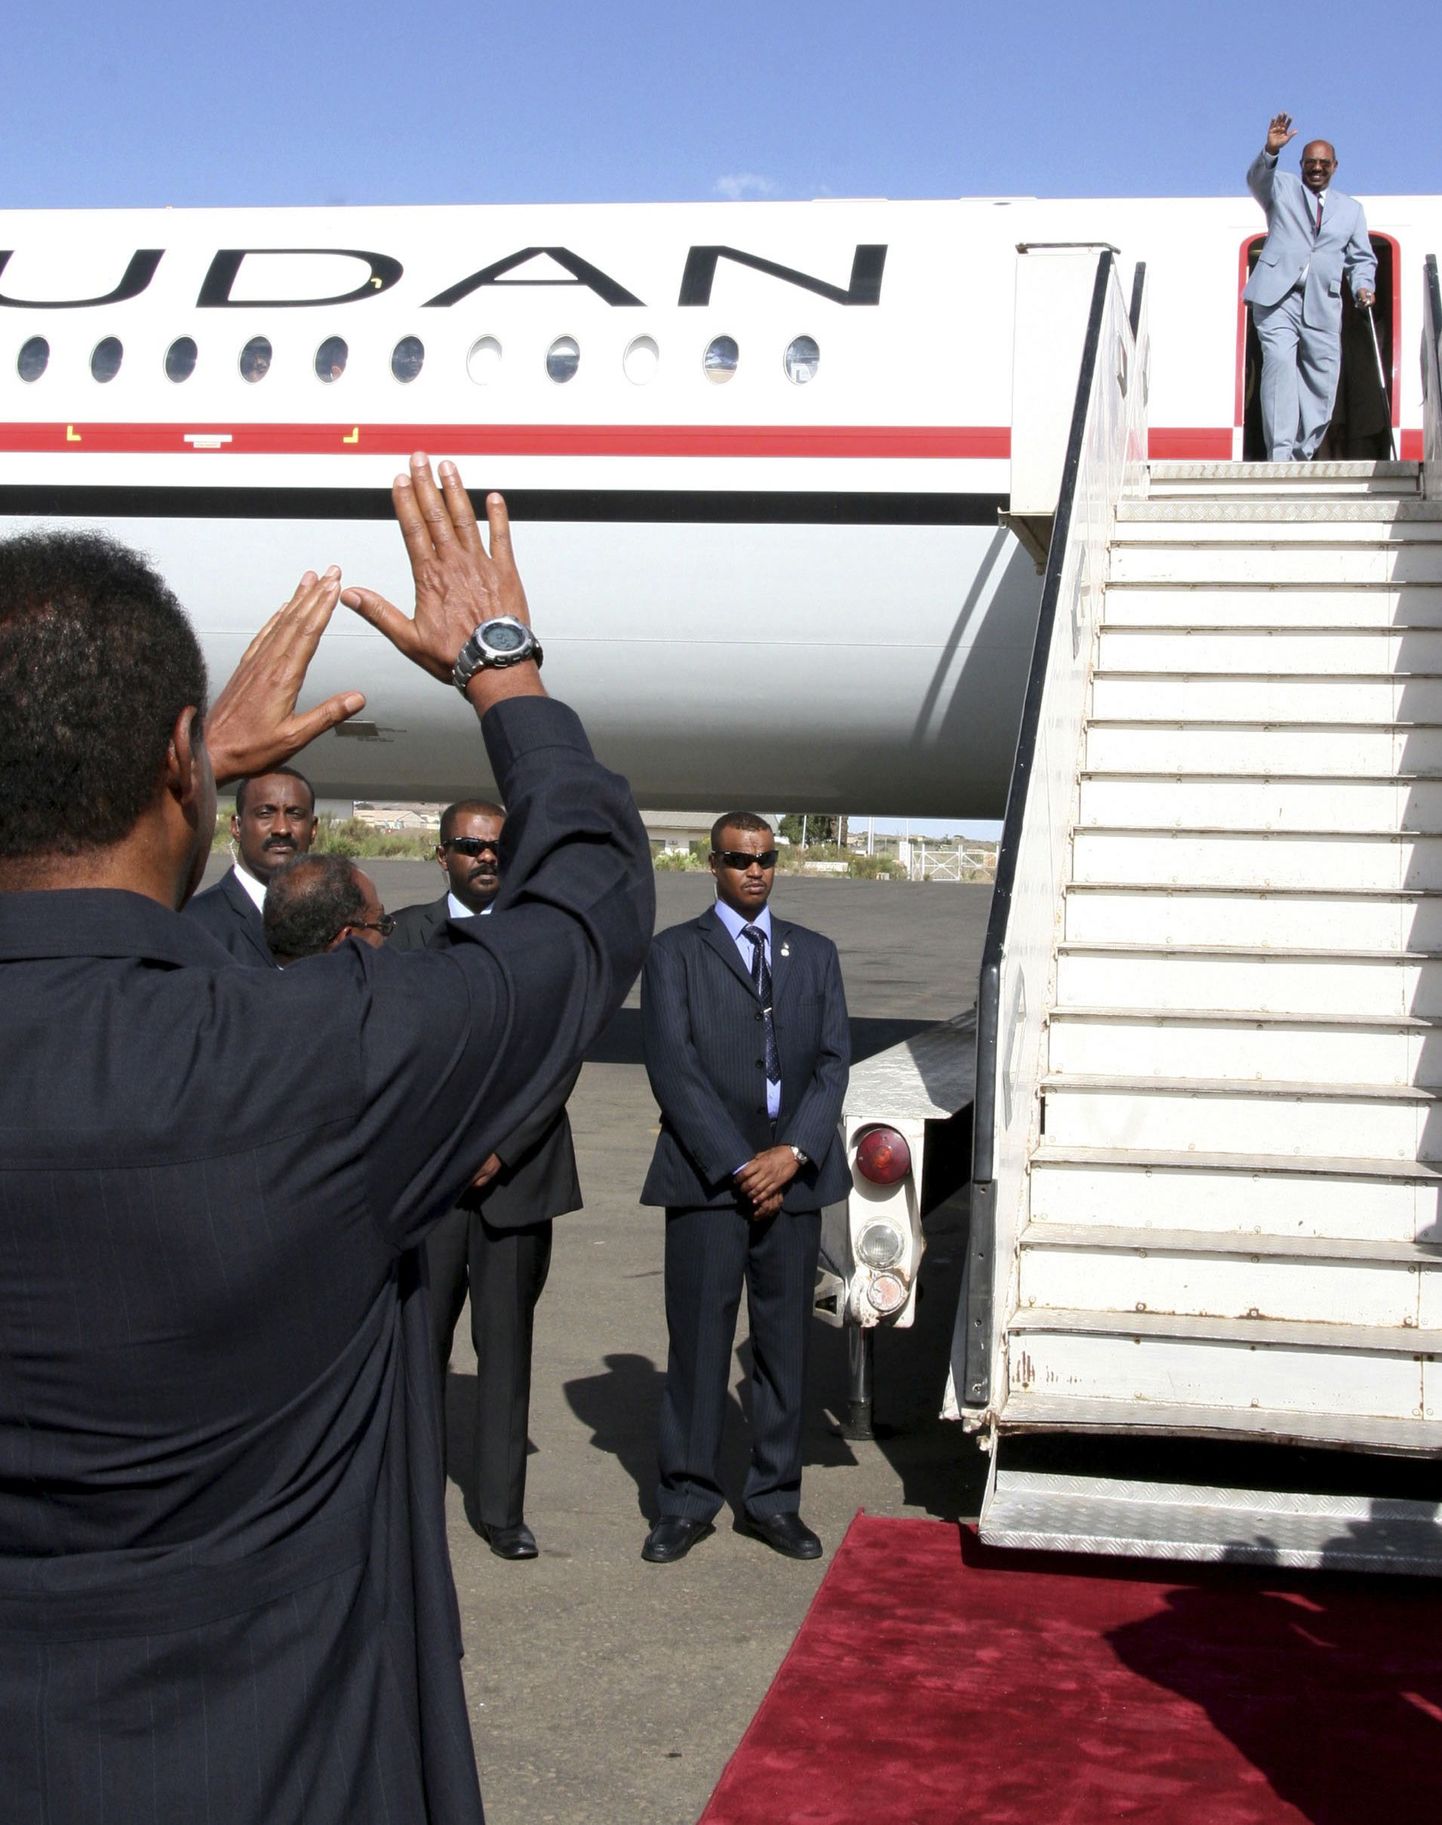 Sudaani president Omar Hassan al-Bashir jätmas hüvasti Eritrea riigipeaga.